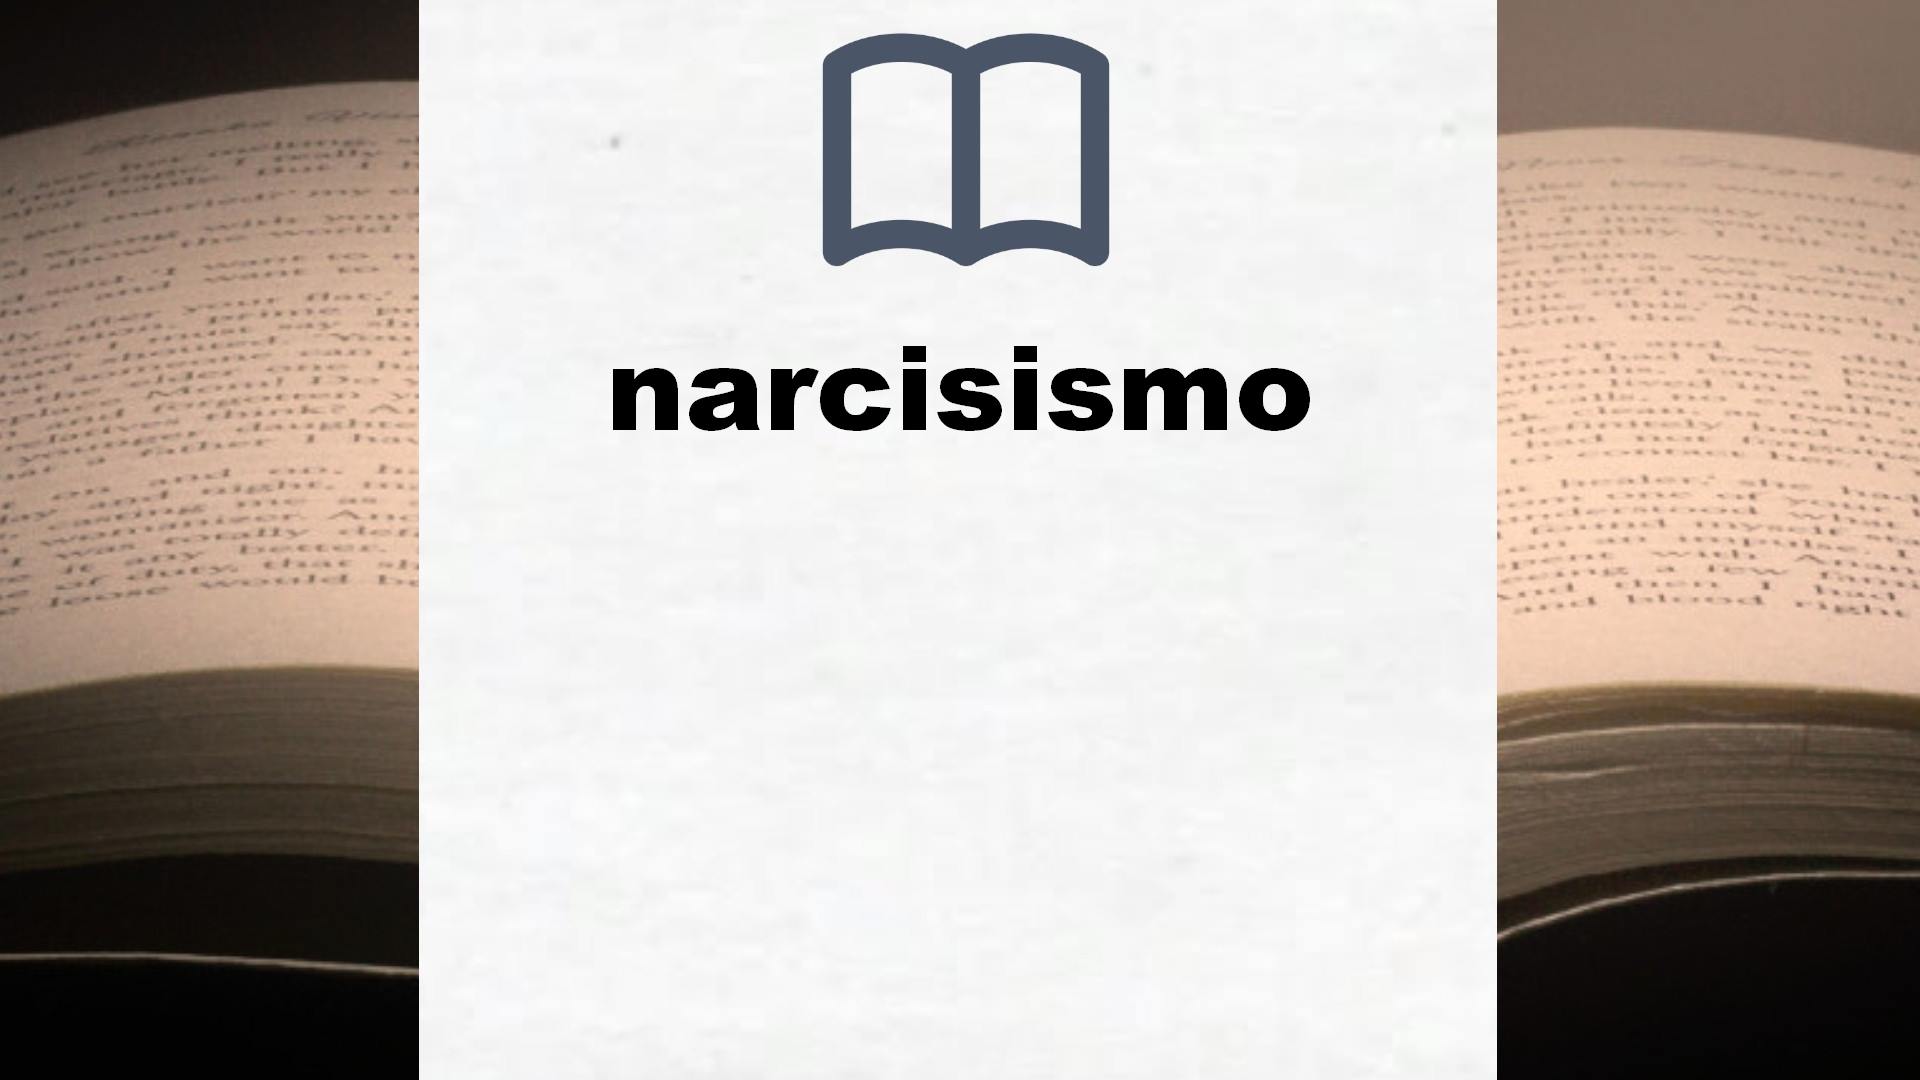 Libros sobre narcisismo